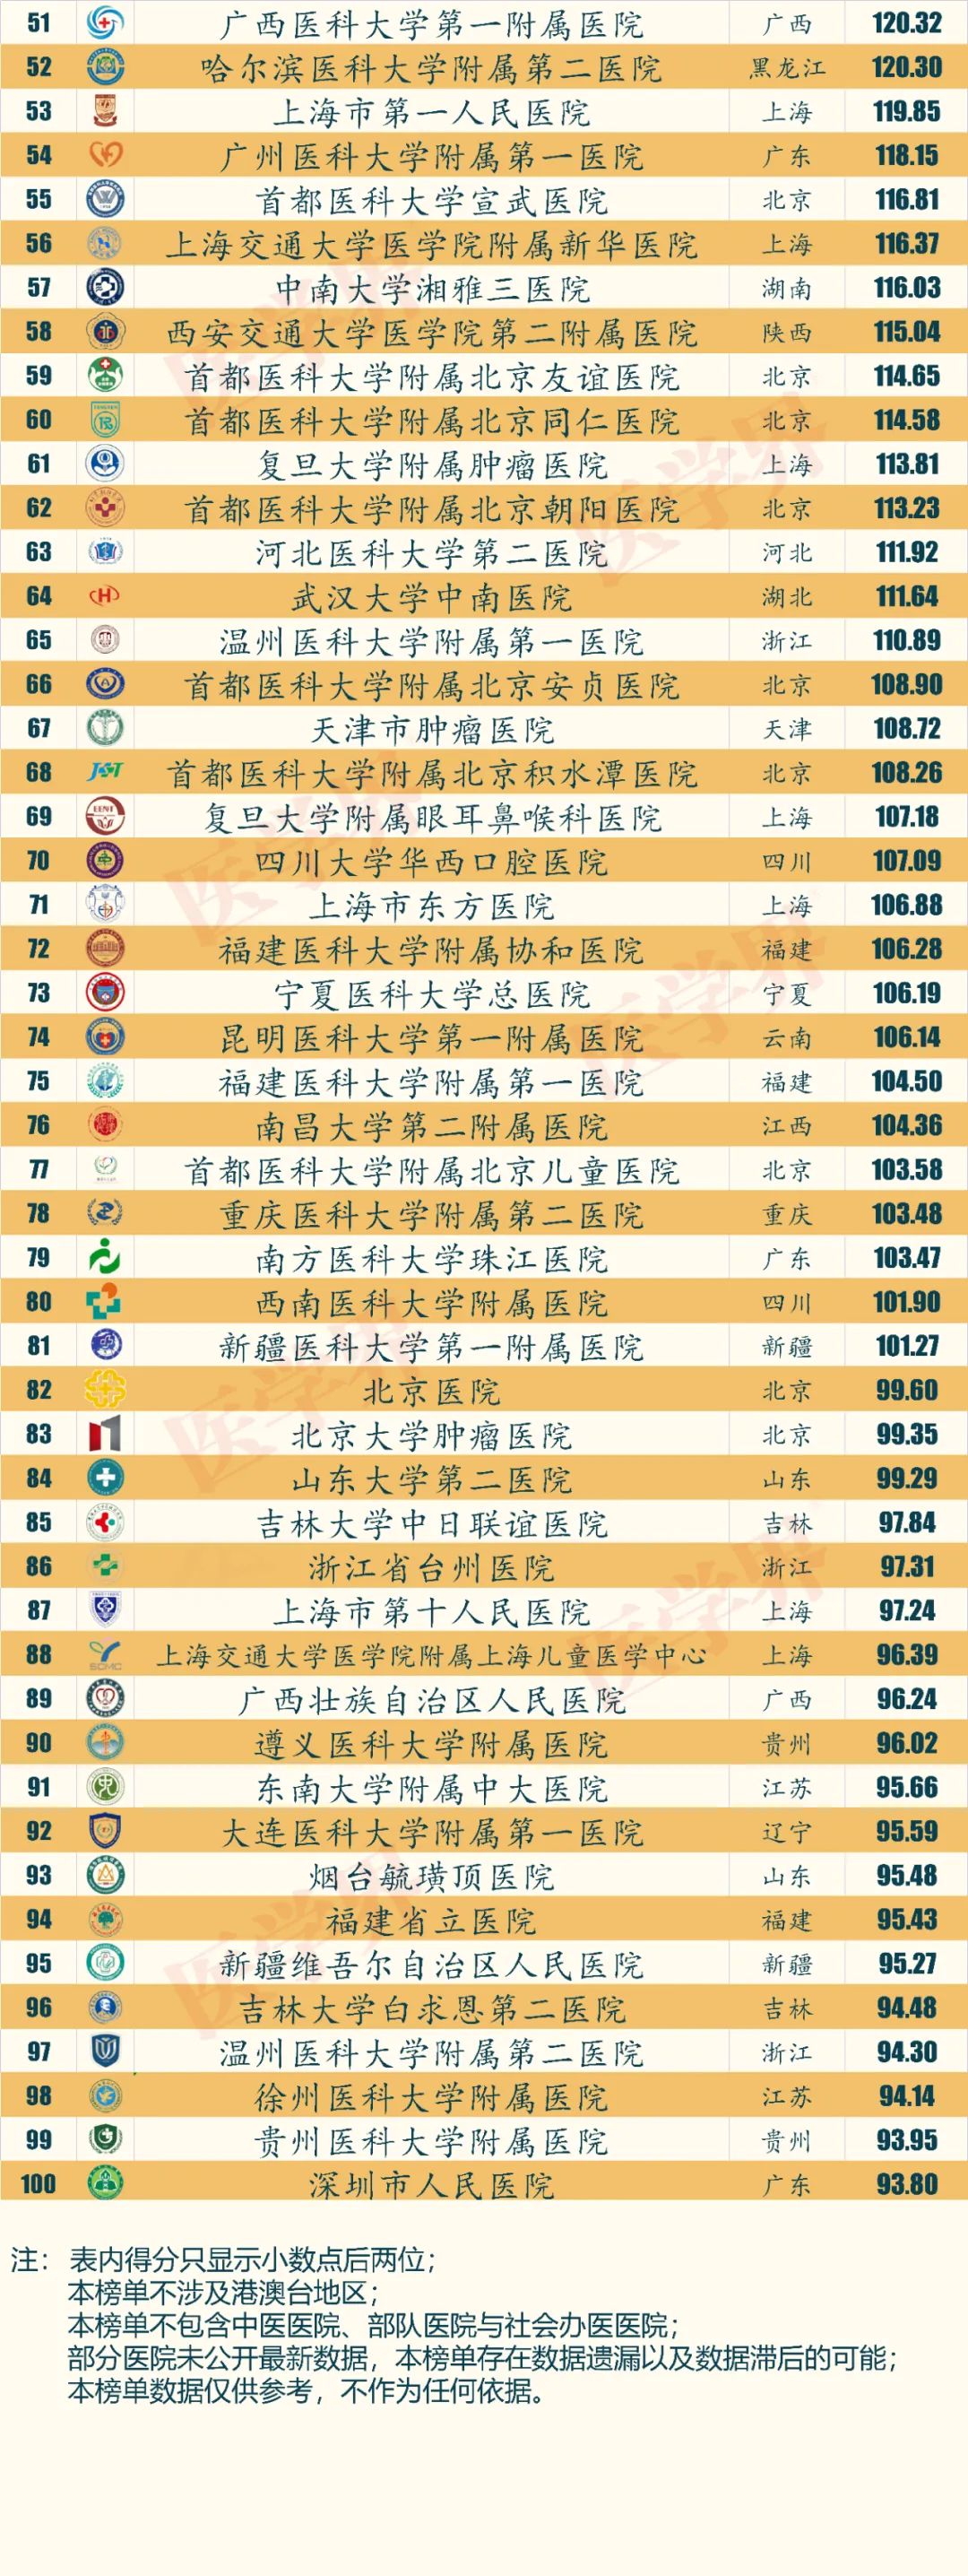 中国首个公立医院品牌指数排行榜出炉